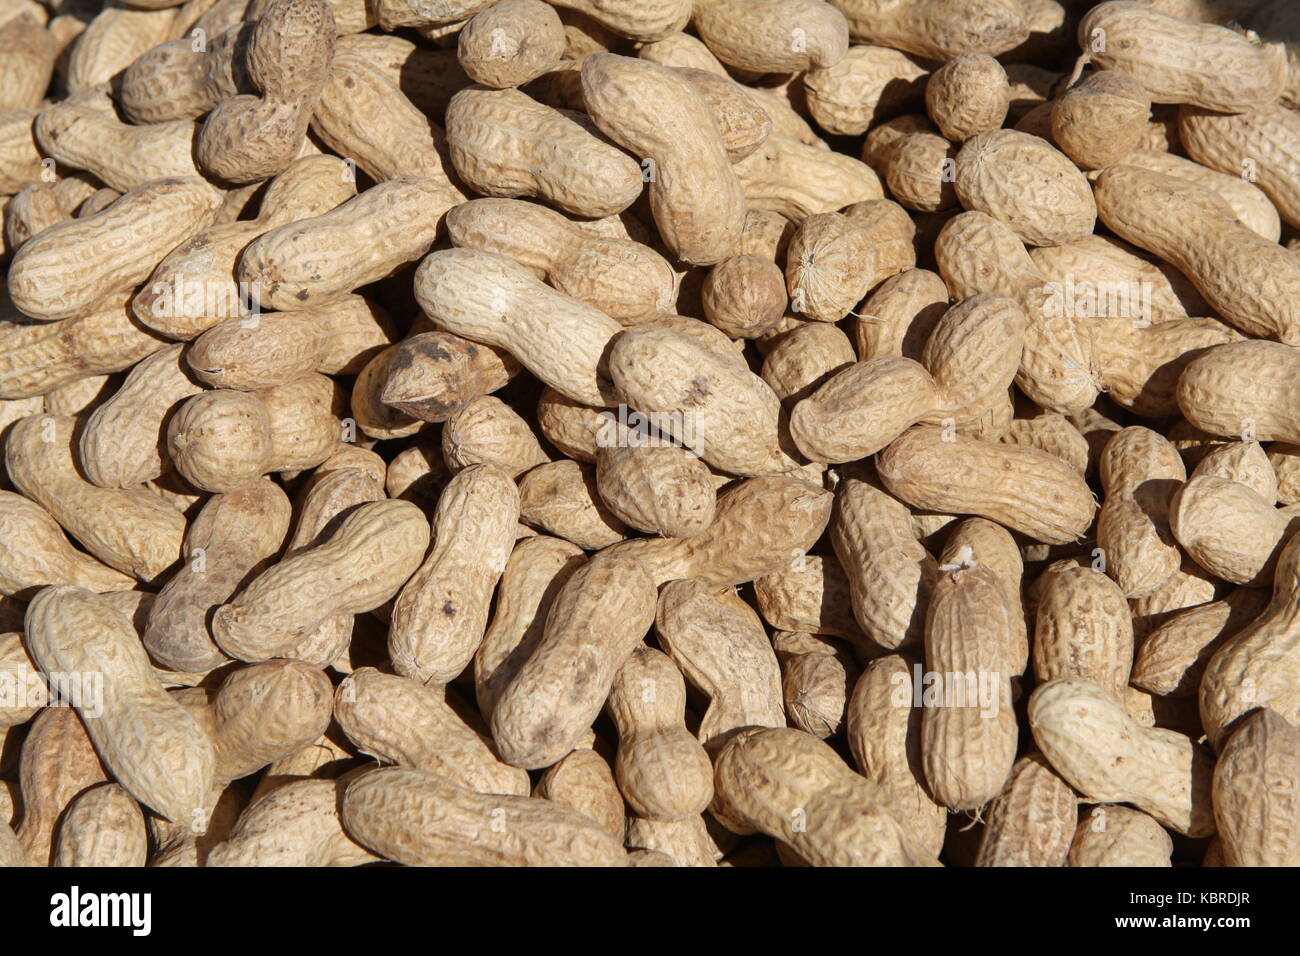 Ernüsse in Schale - Peanuts Stock Photo